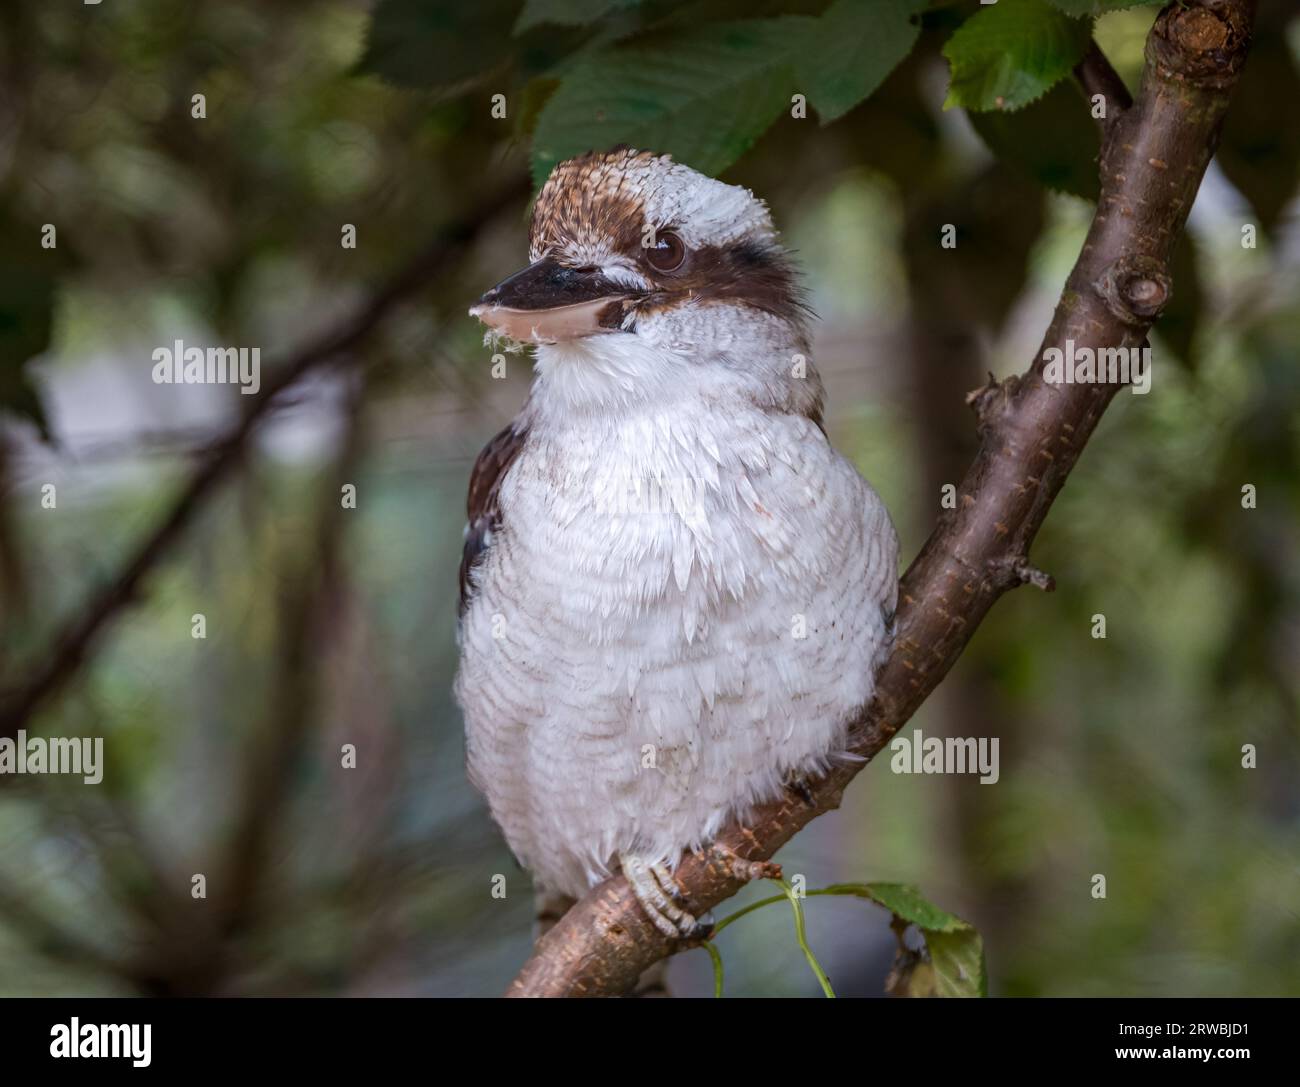 Close up of Kkokaburra (Dacelo novaeguineae) perched on branch, Bird Garden, Scotland, Oxton, Scotland, UK Stock Photo